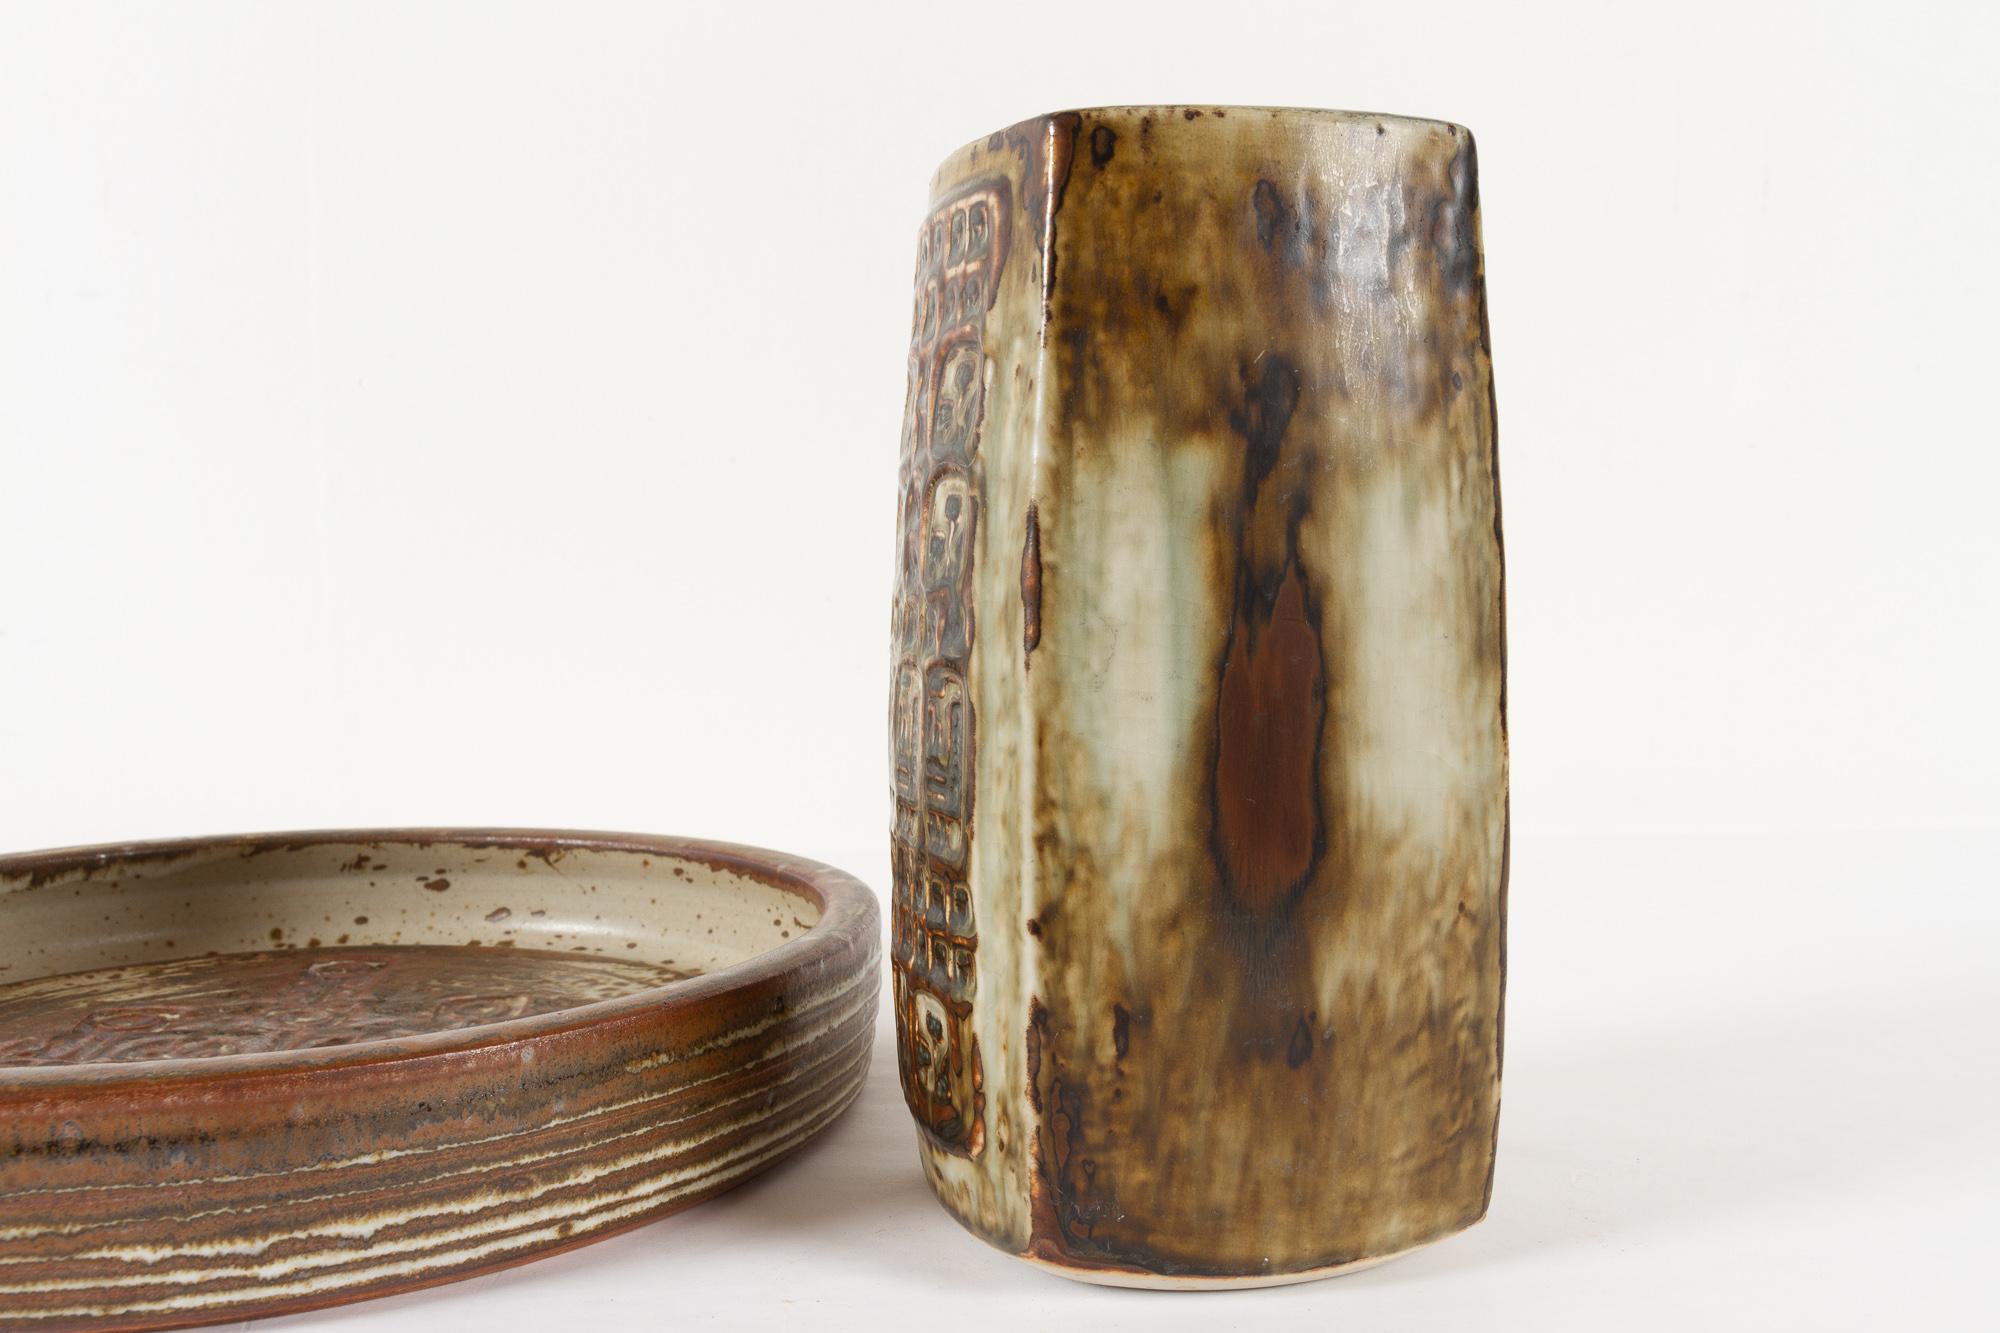 Vintage Danish Stoneware Vase and Bowl by Jørgen Mogensen 1970s For Sale 2